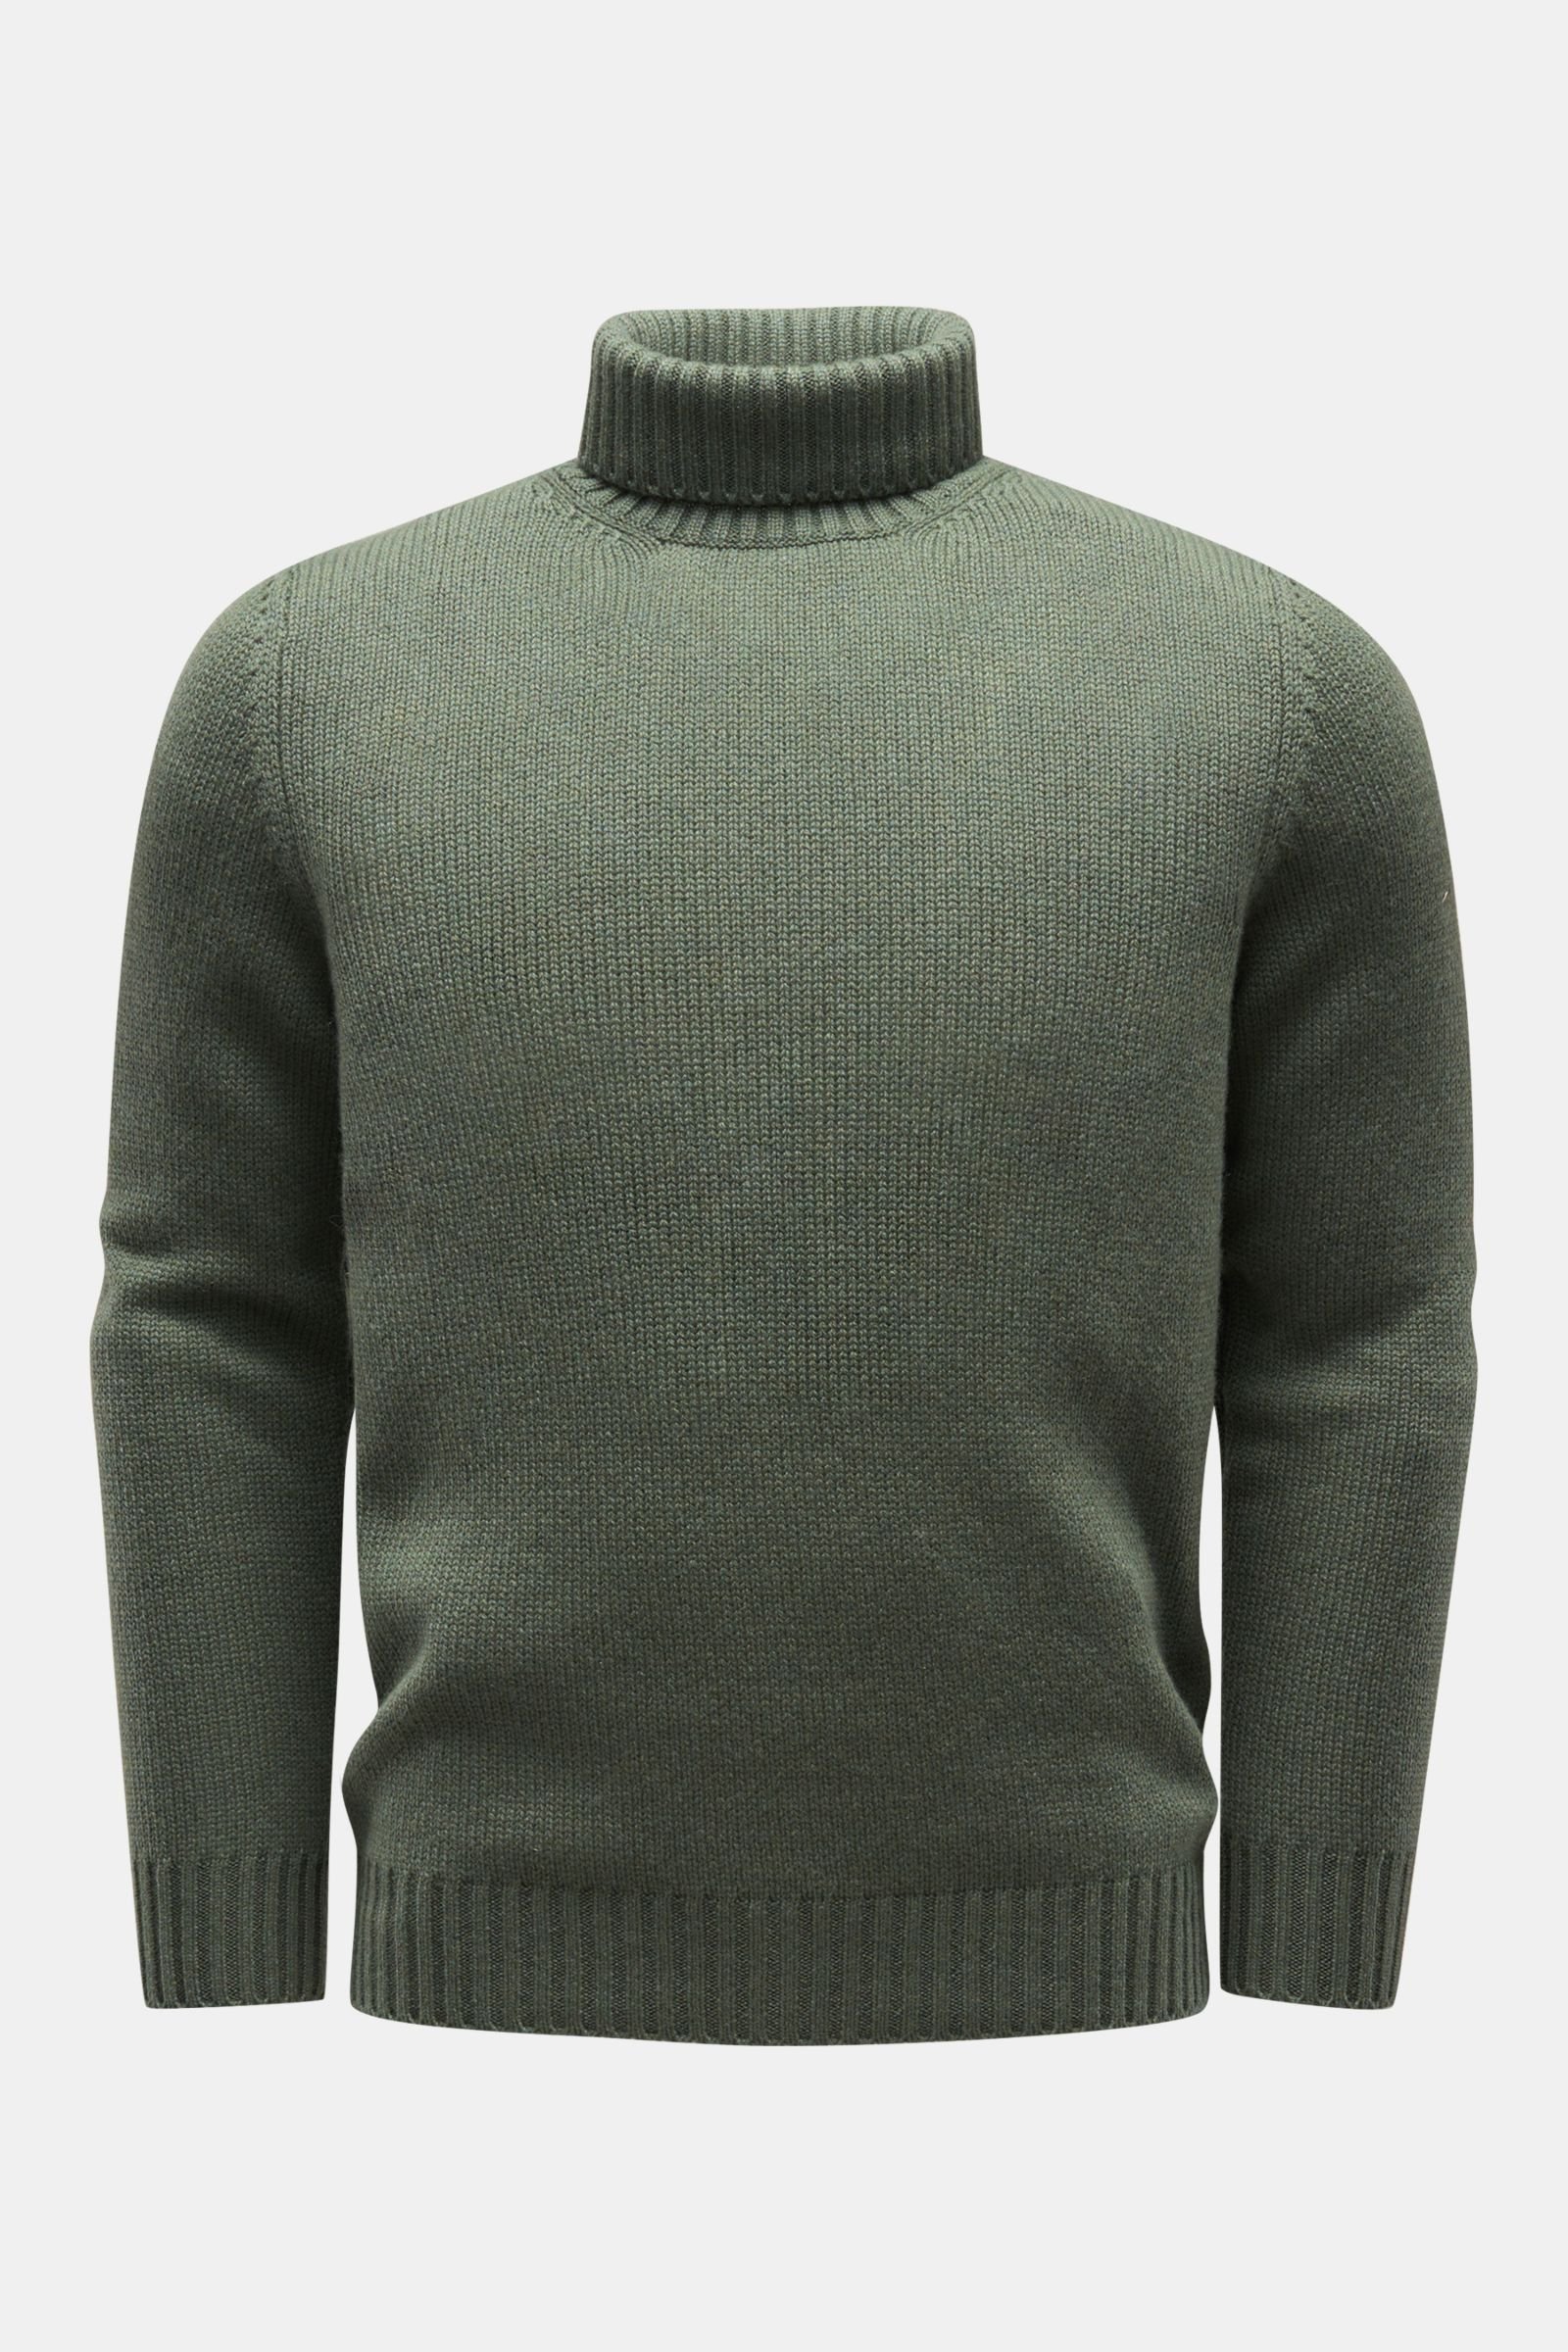 Cashmere turtleneck jumper grey-green